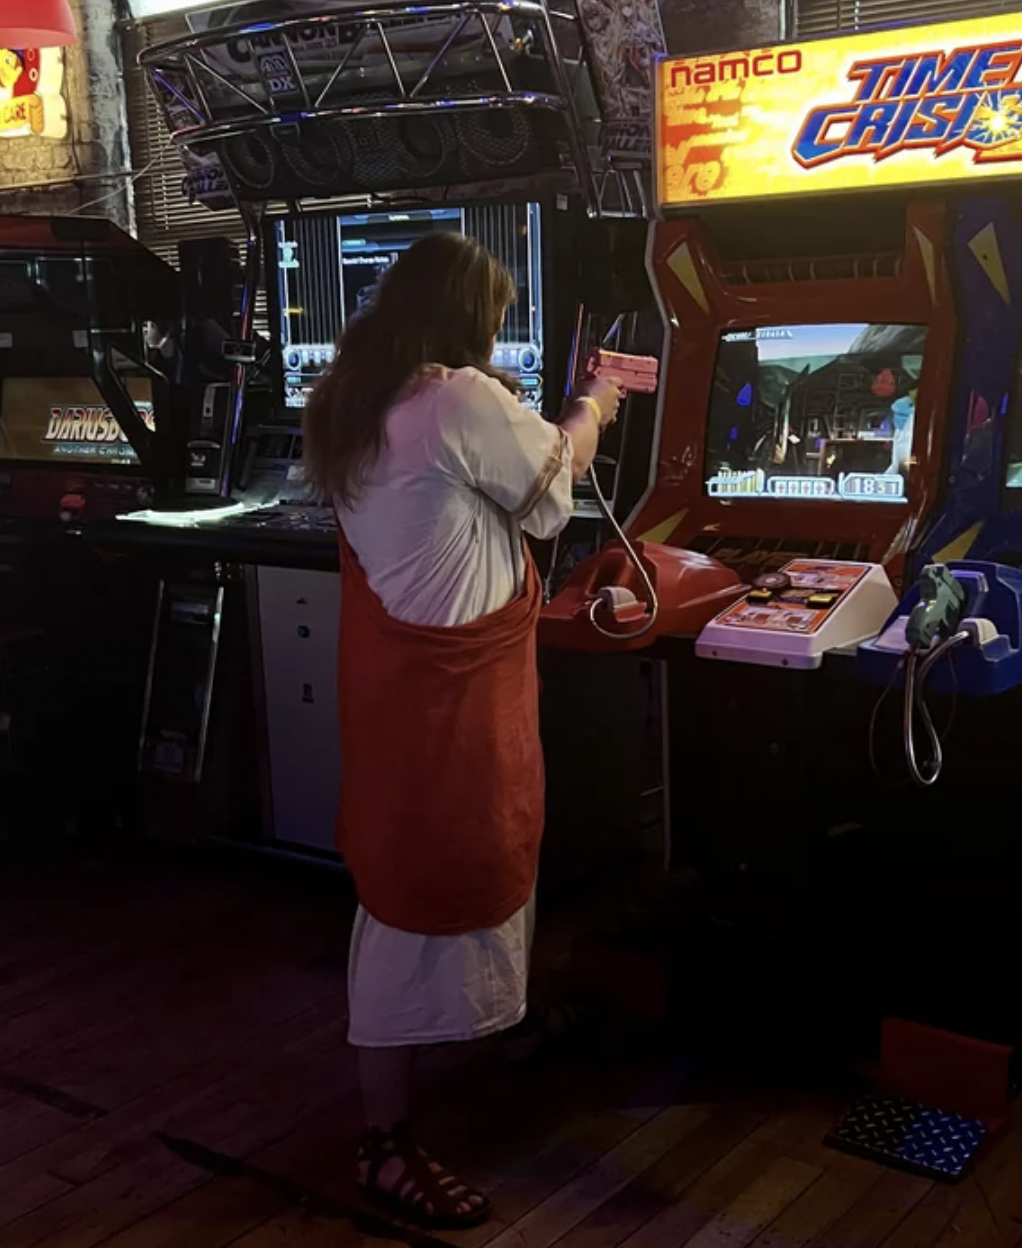 fascinating photos - arcade game - Qued Occupit namco Time ConfComar um